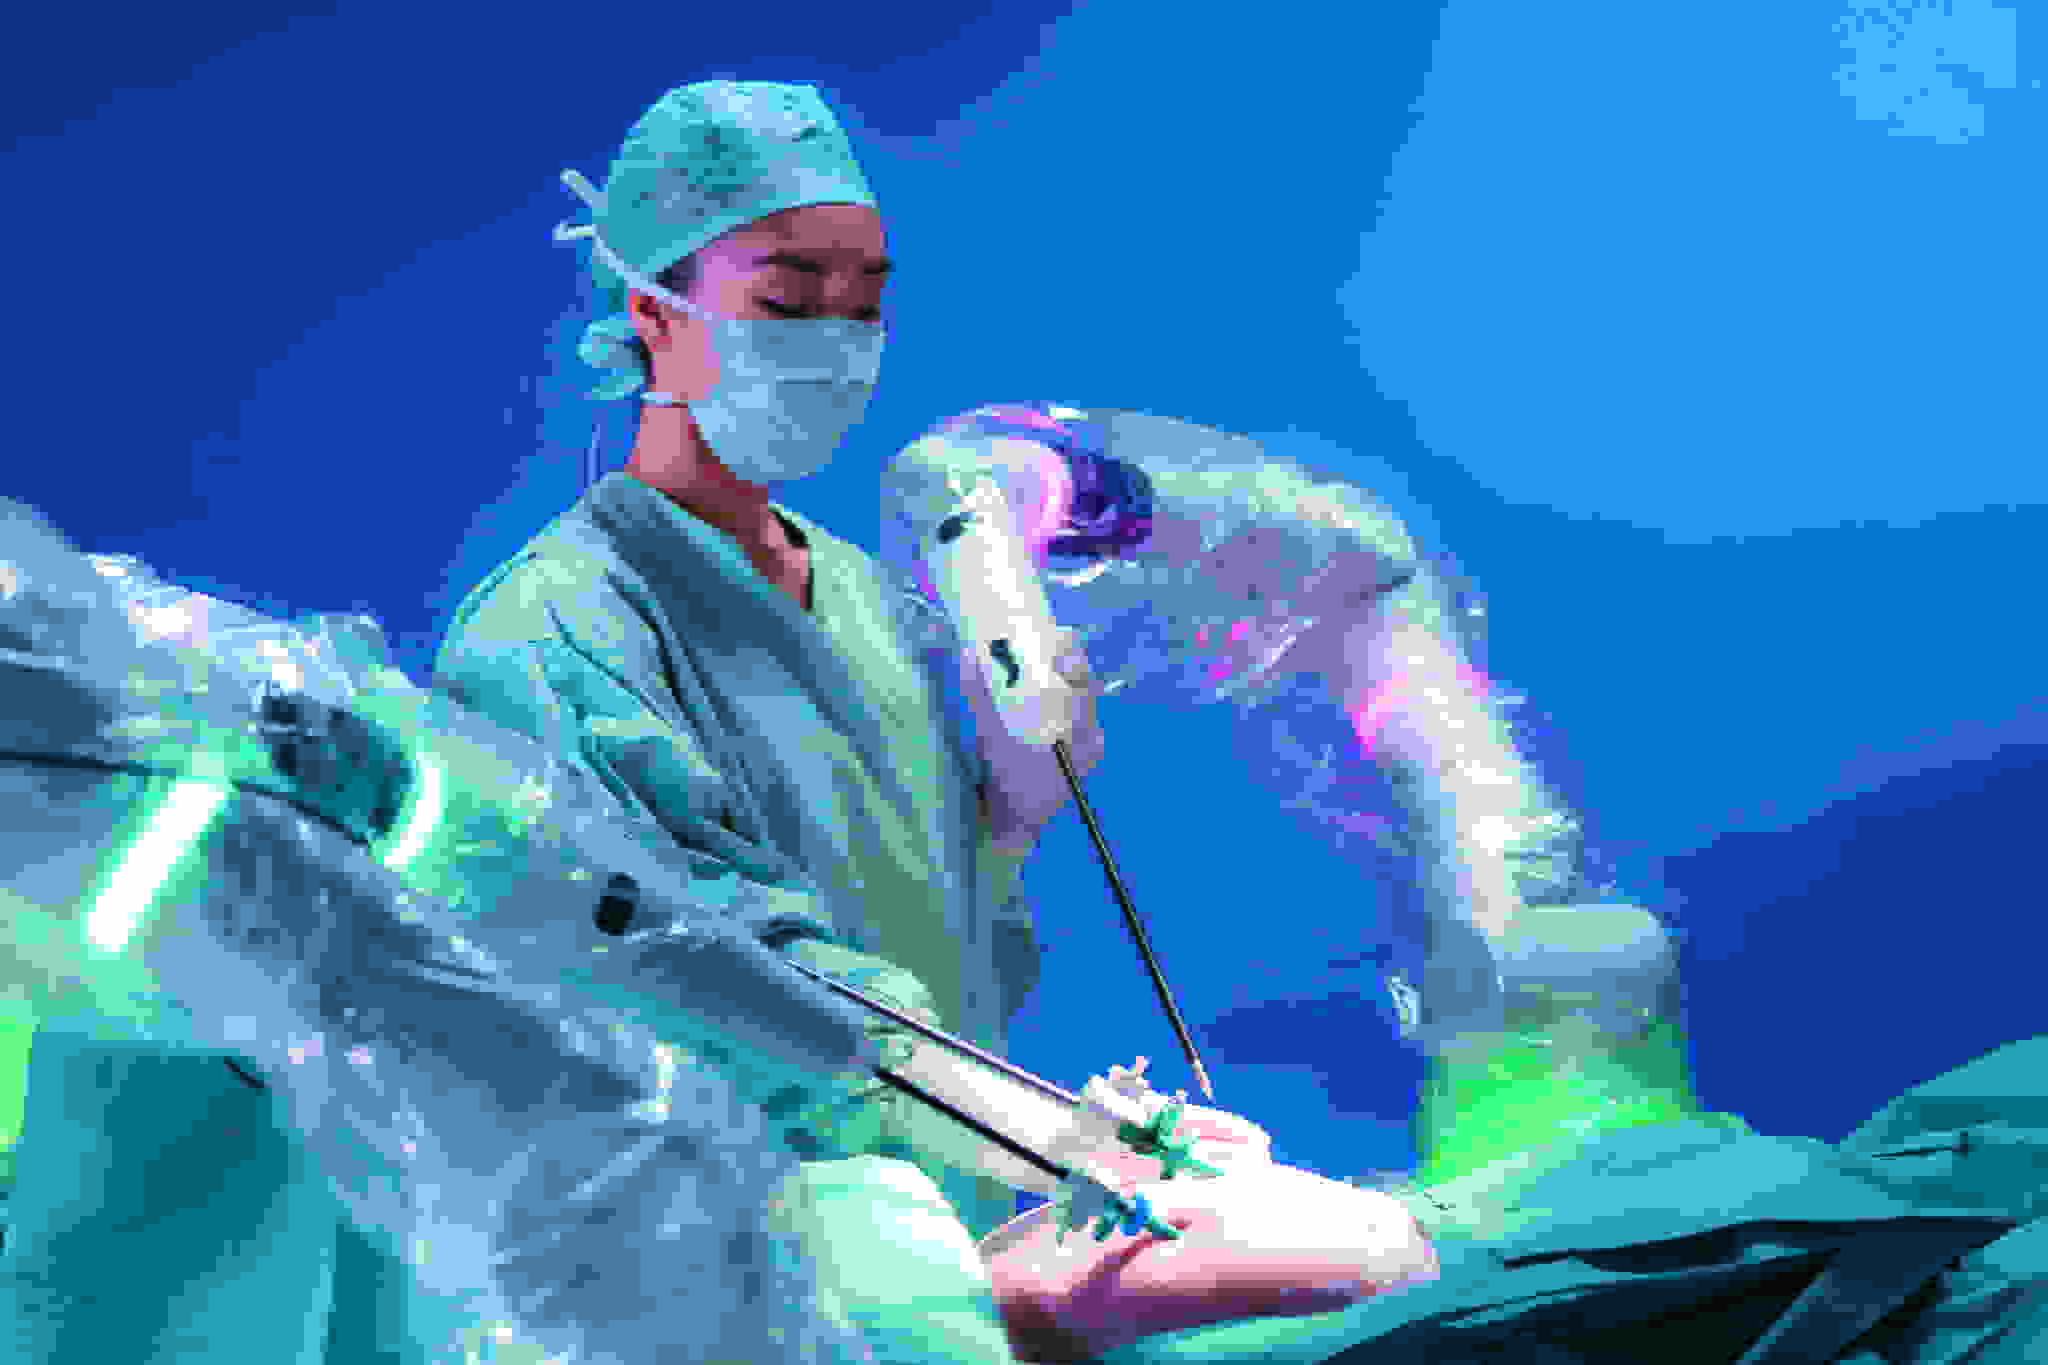 Versius in operating theatre with scrub nurse - NU Hospitals